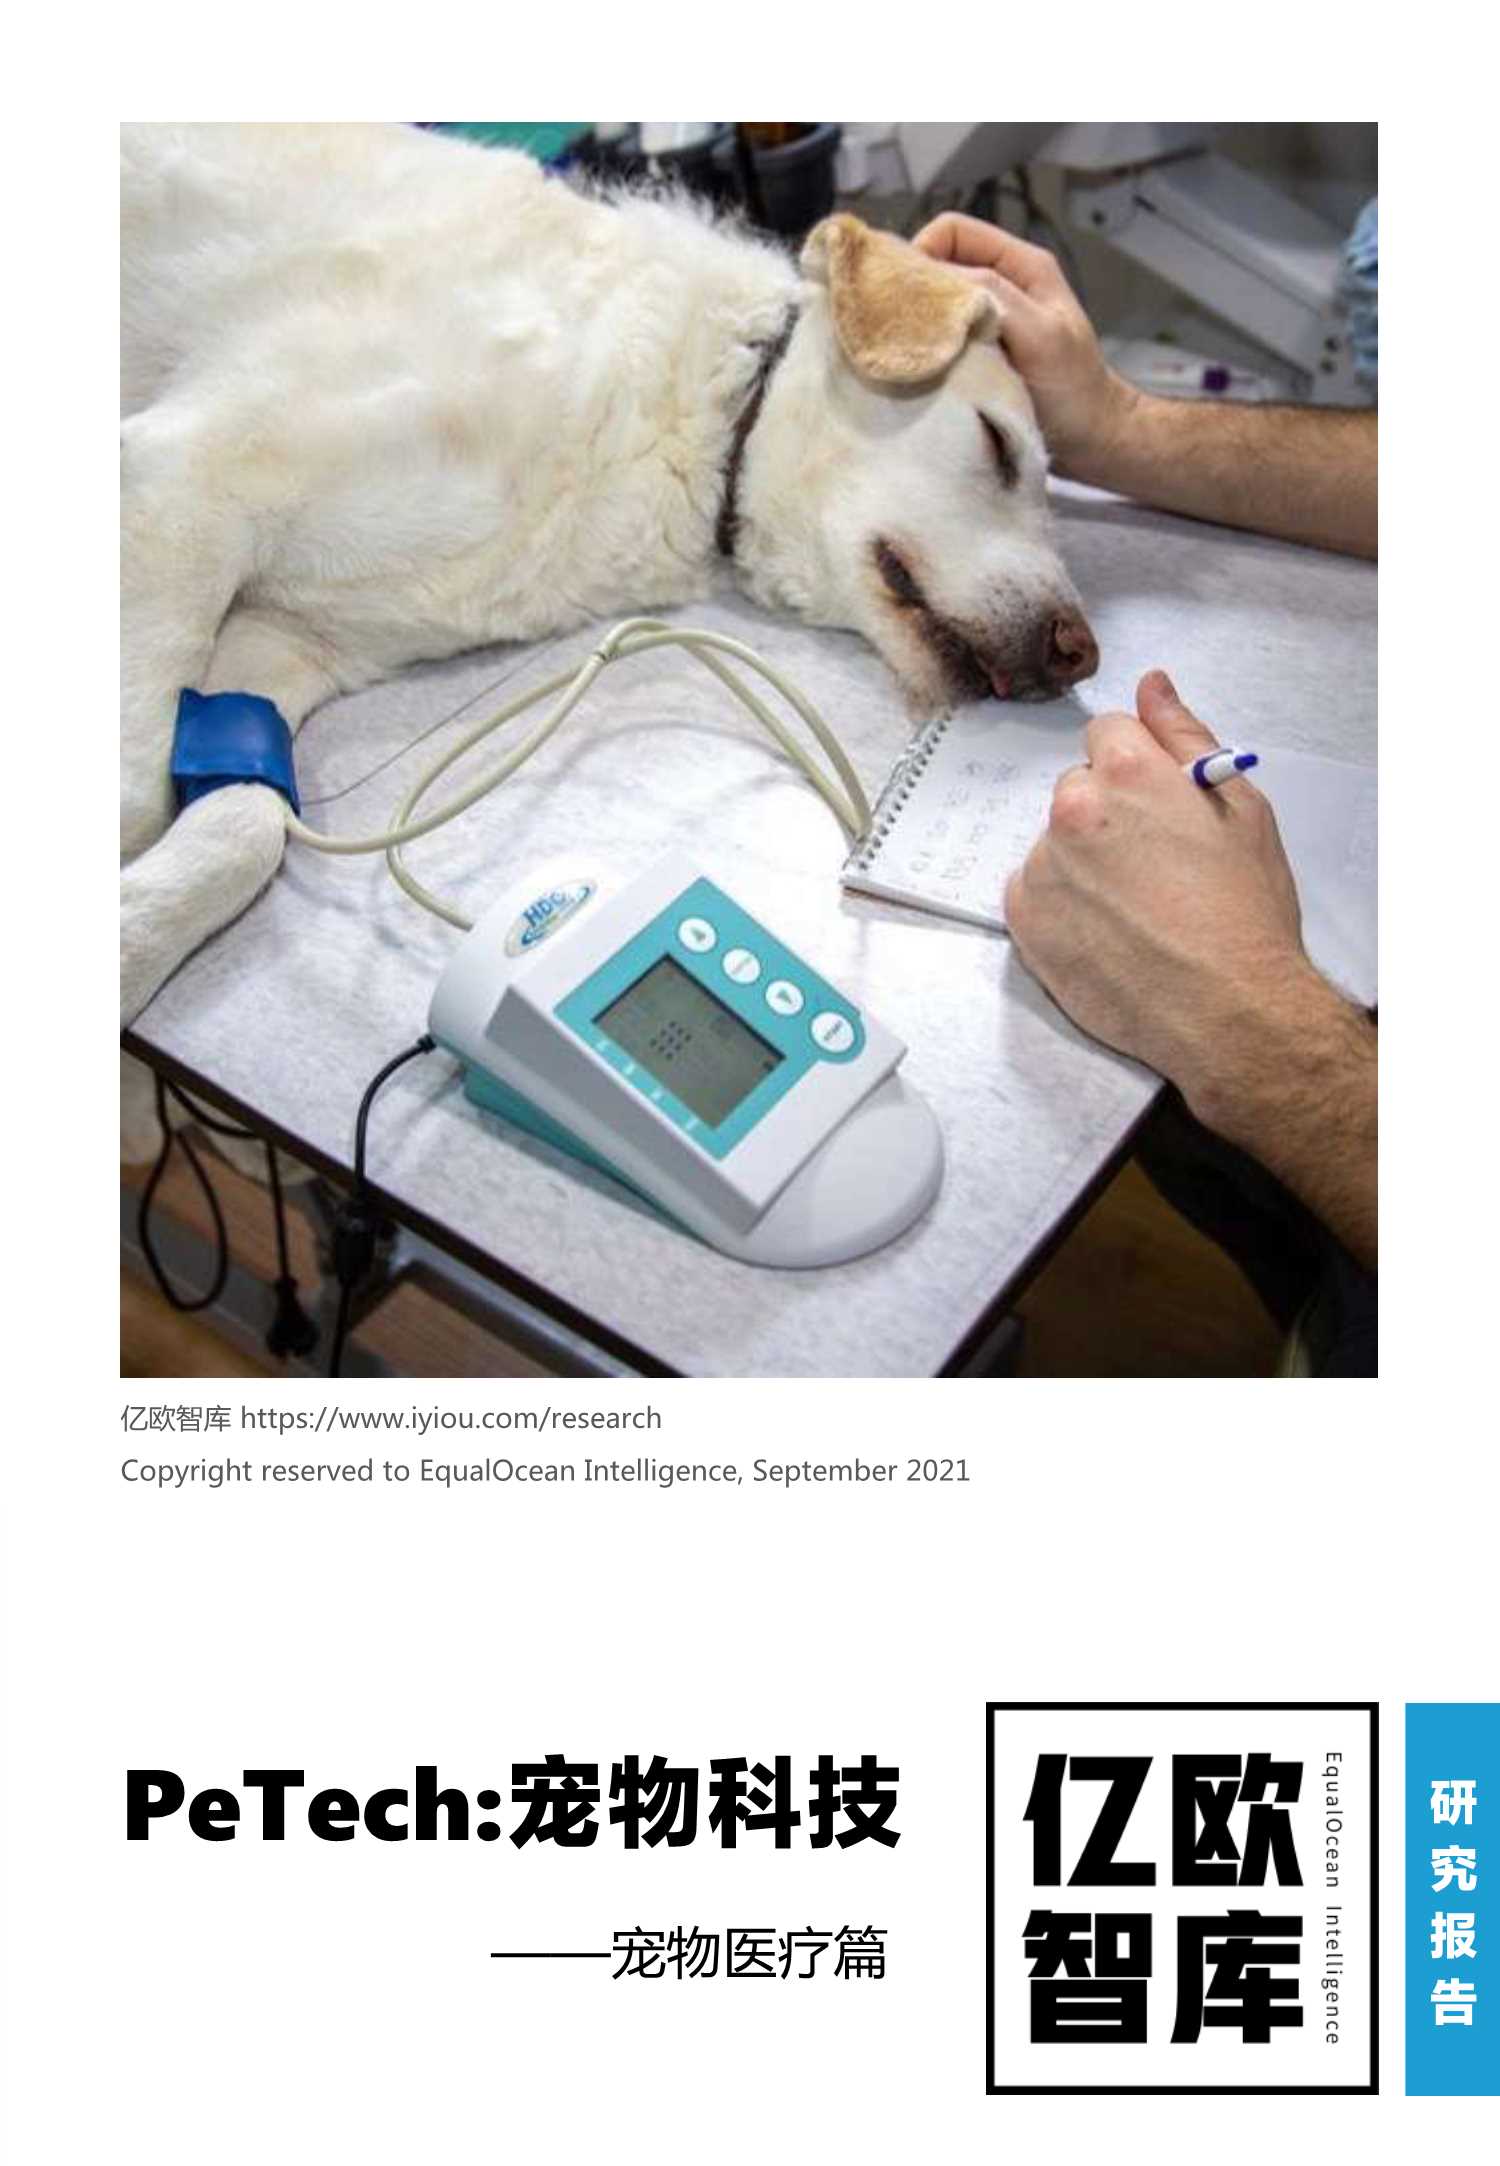 亿欧智库-PeTech宠物科技——宠物医疗篇研究报告-2021.10-26页